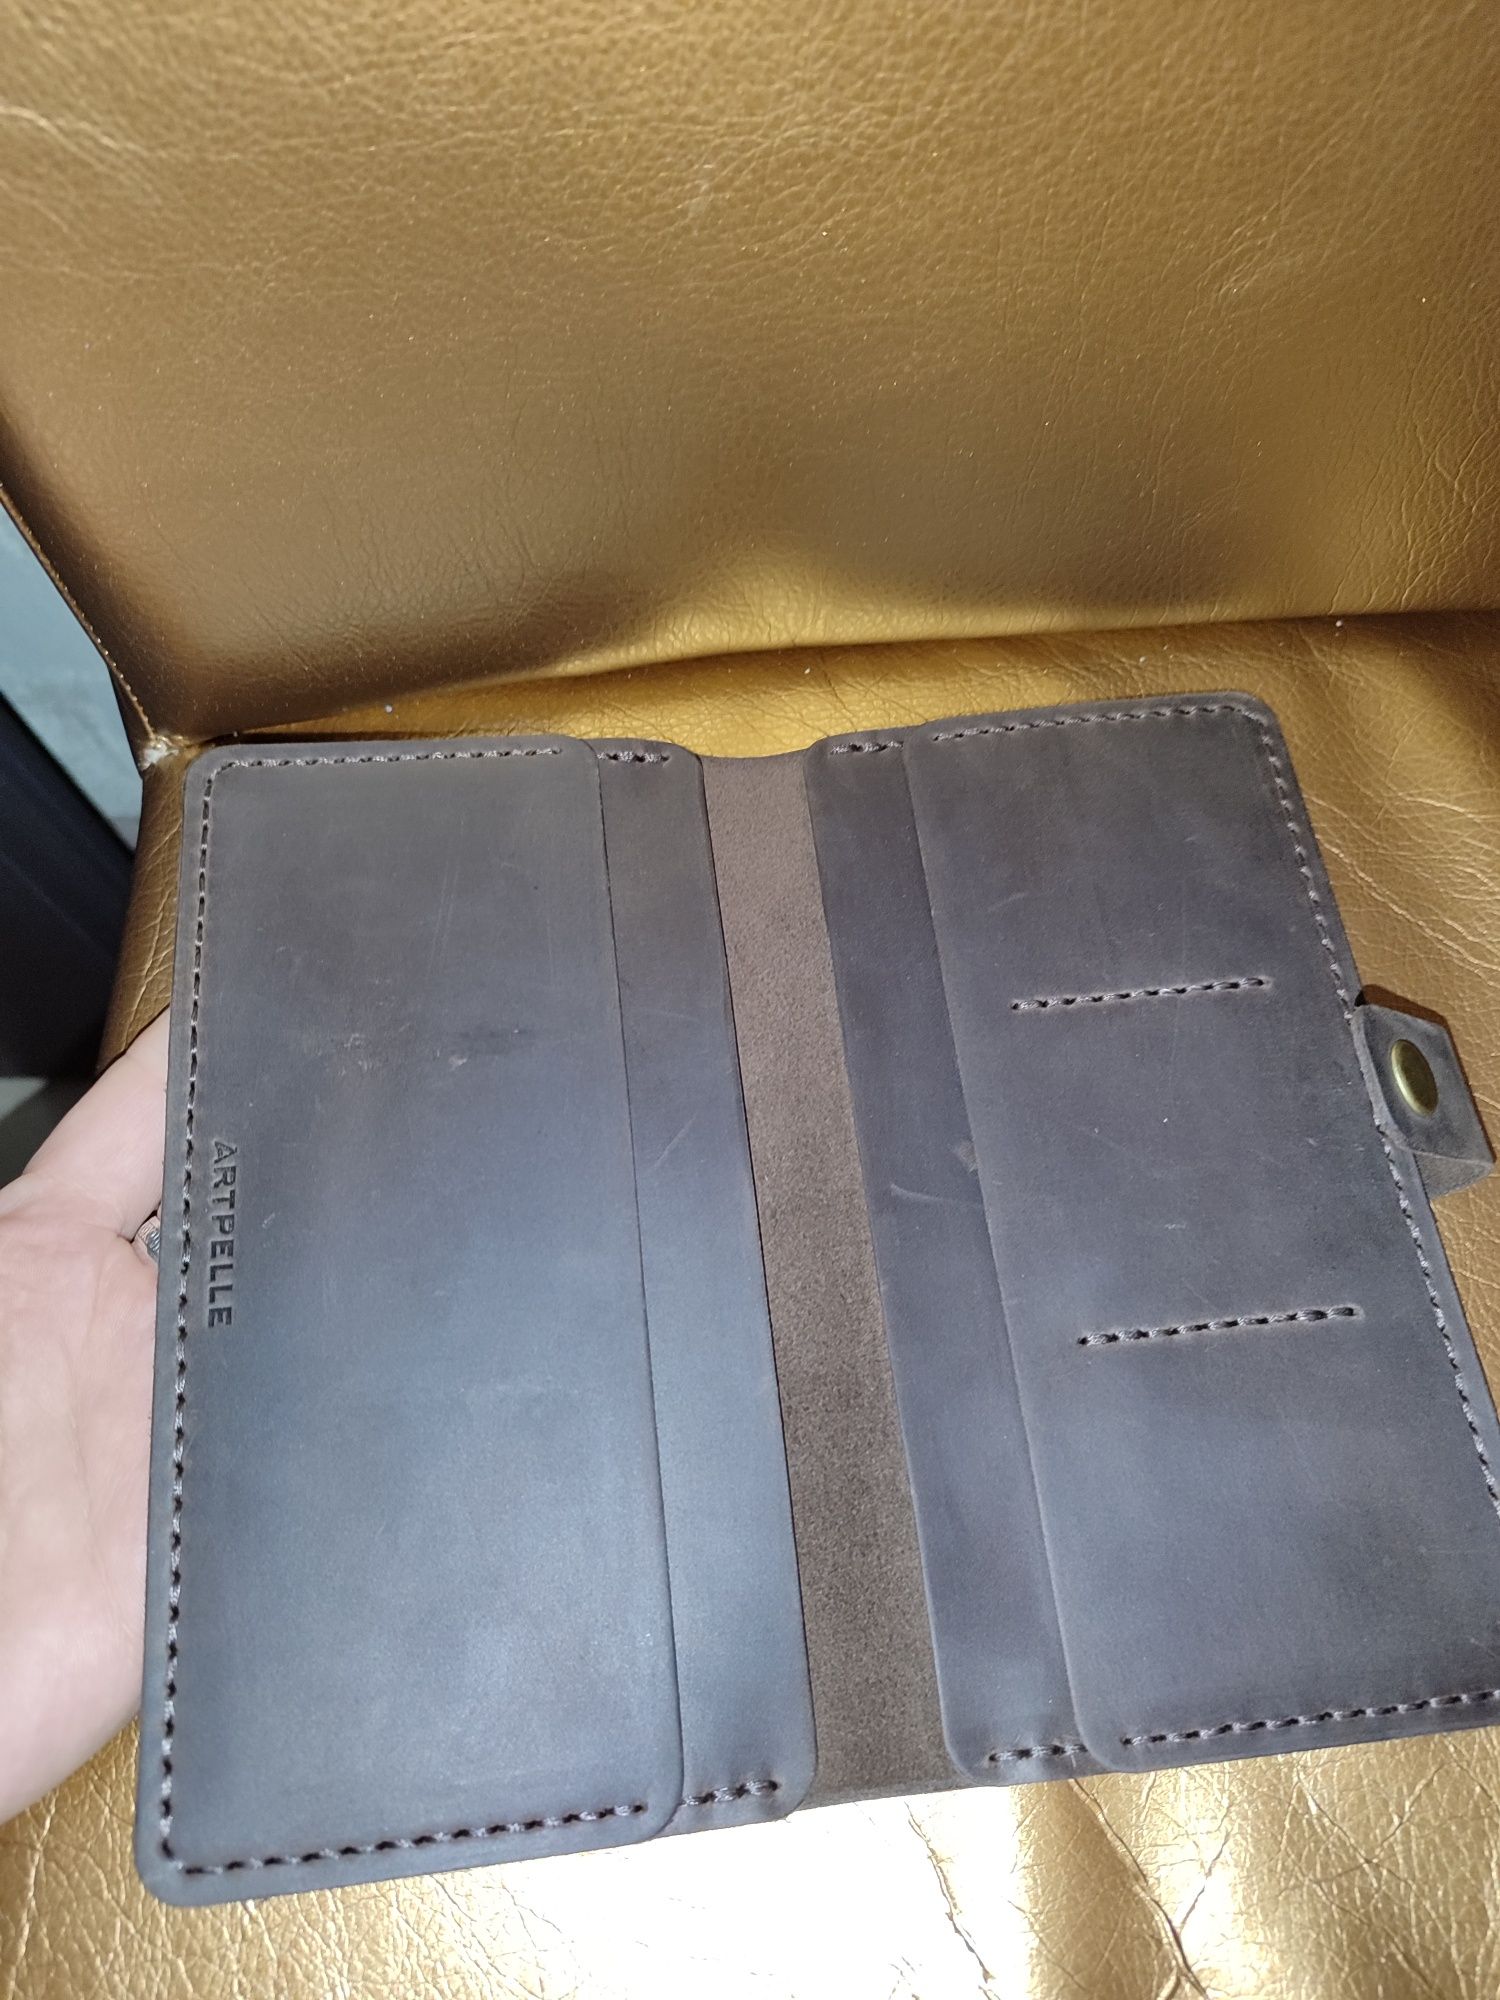 Шкіряний гаманець портмоне